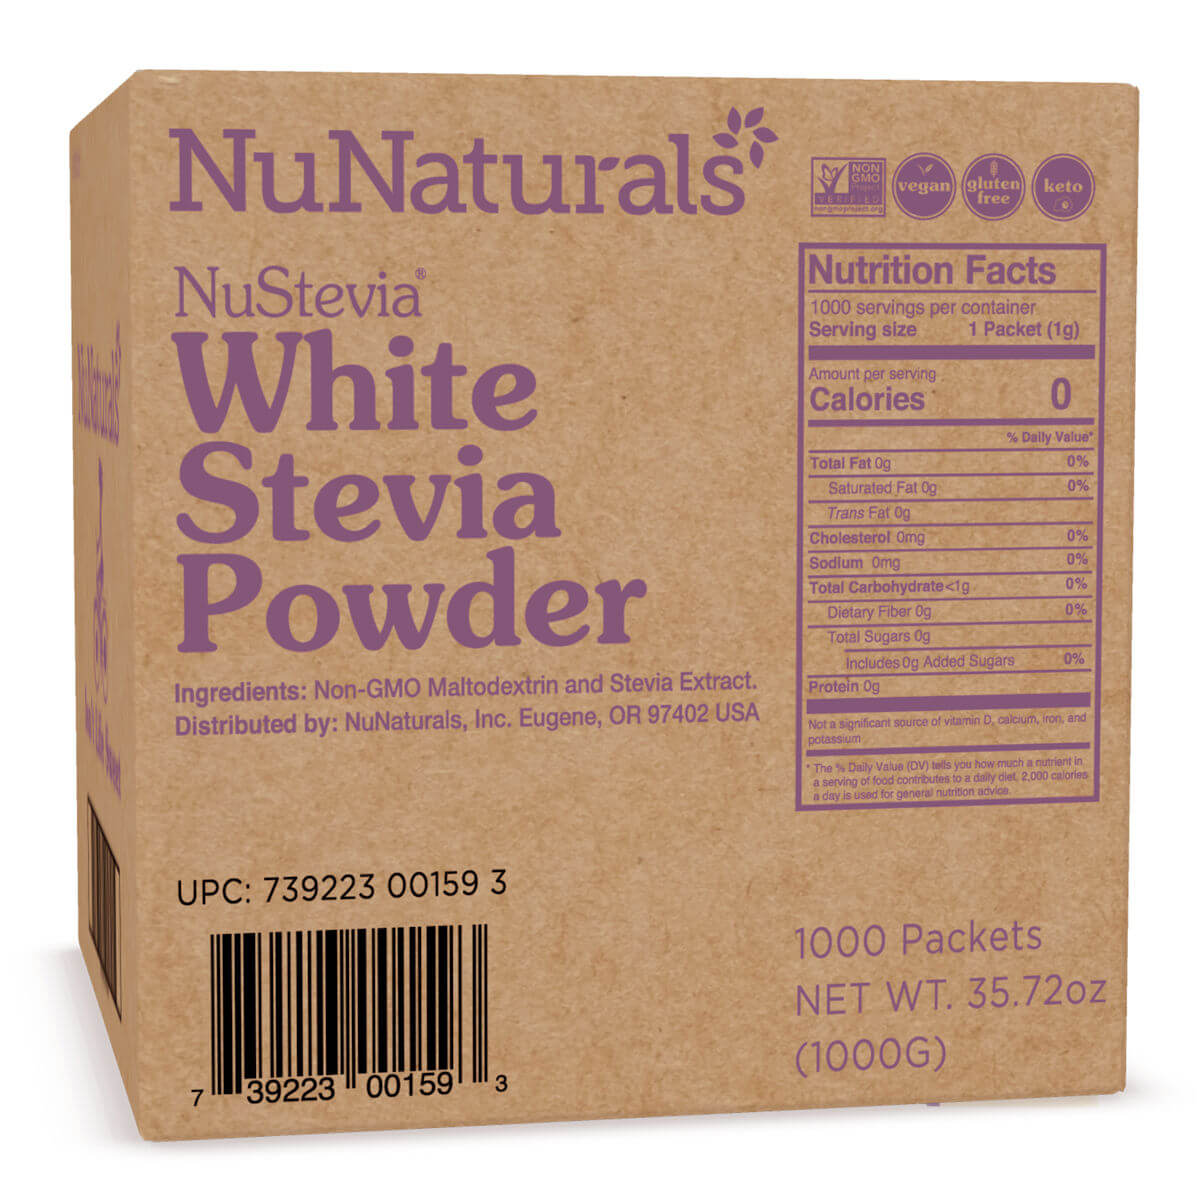 NuNaturals White Stevia Powder